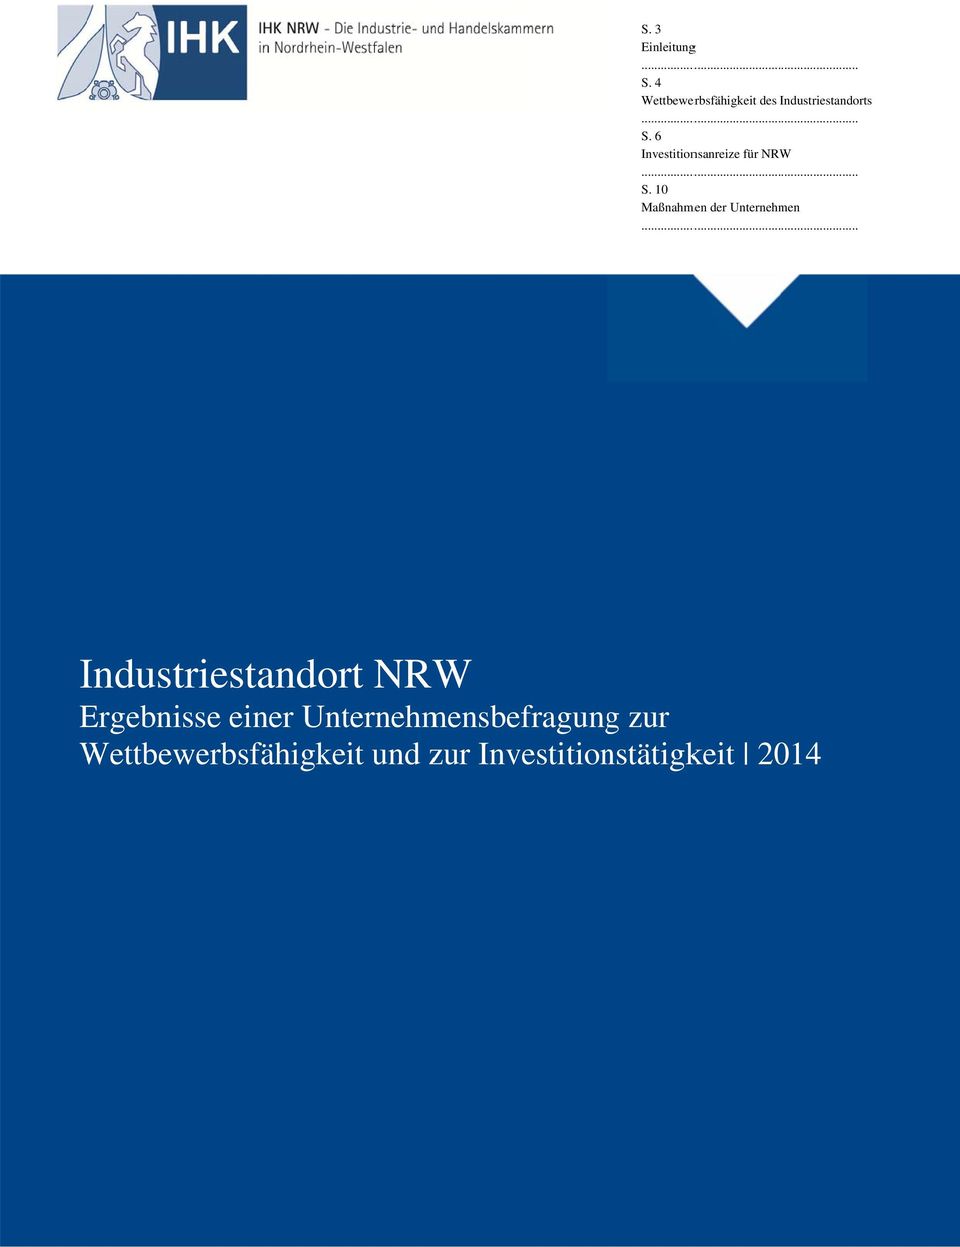 6 Investitionsanreize für NRW... S. 10 Maßnahmen der Unternehmen.